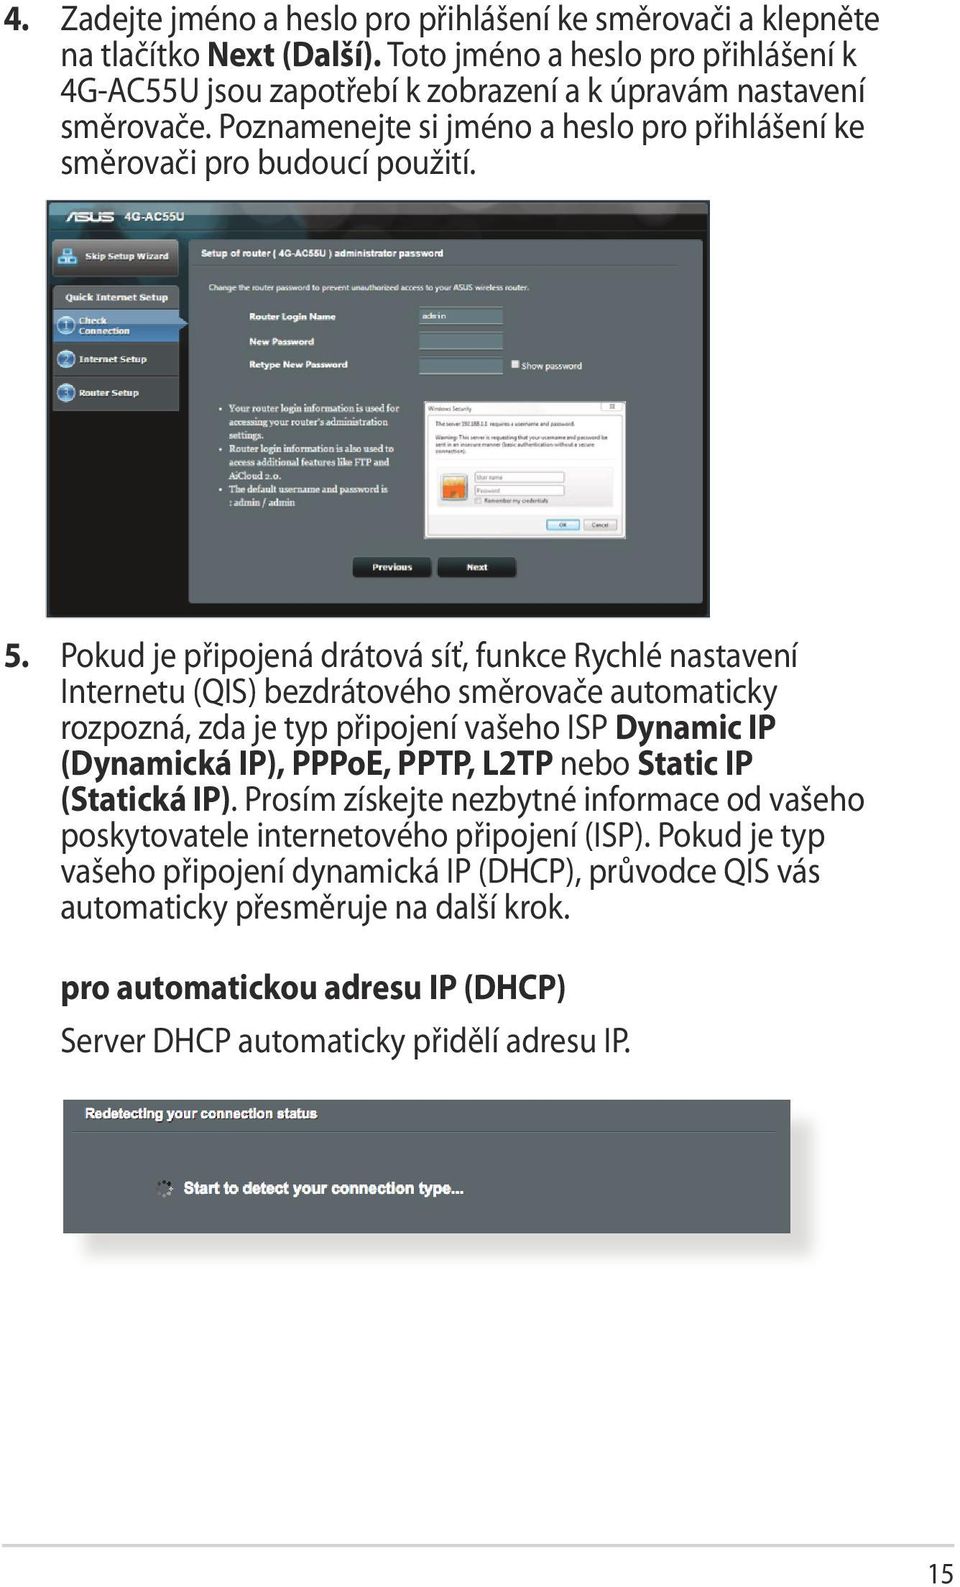 Pokud je připojená drátová síť, funkce Rychlé nastavení Internetu (QIS) bezdrátového směrovače automaticky rozpozná, zda je typ připojení vašeho ISP Dynamic IP (Dynamická IP), PPPoE, PPTP, L2TP